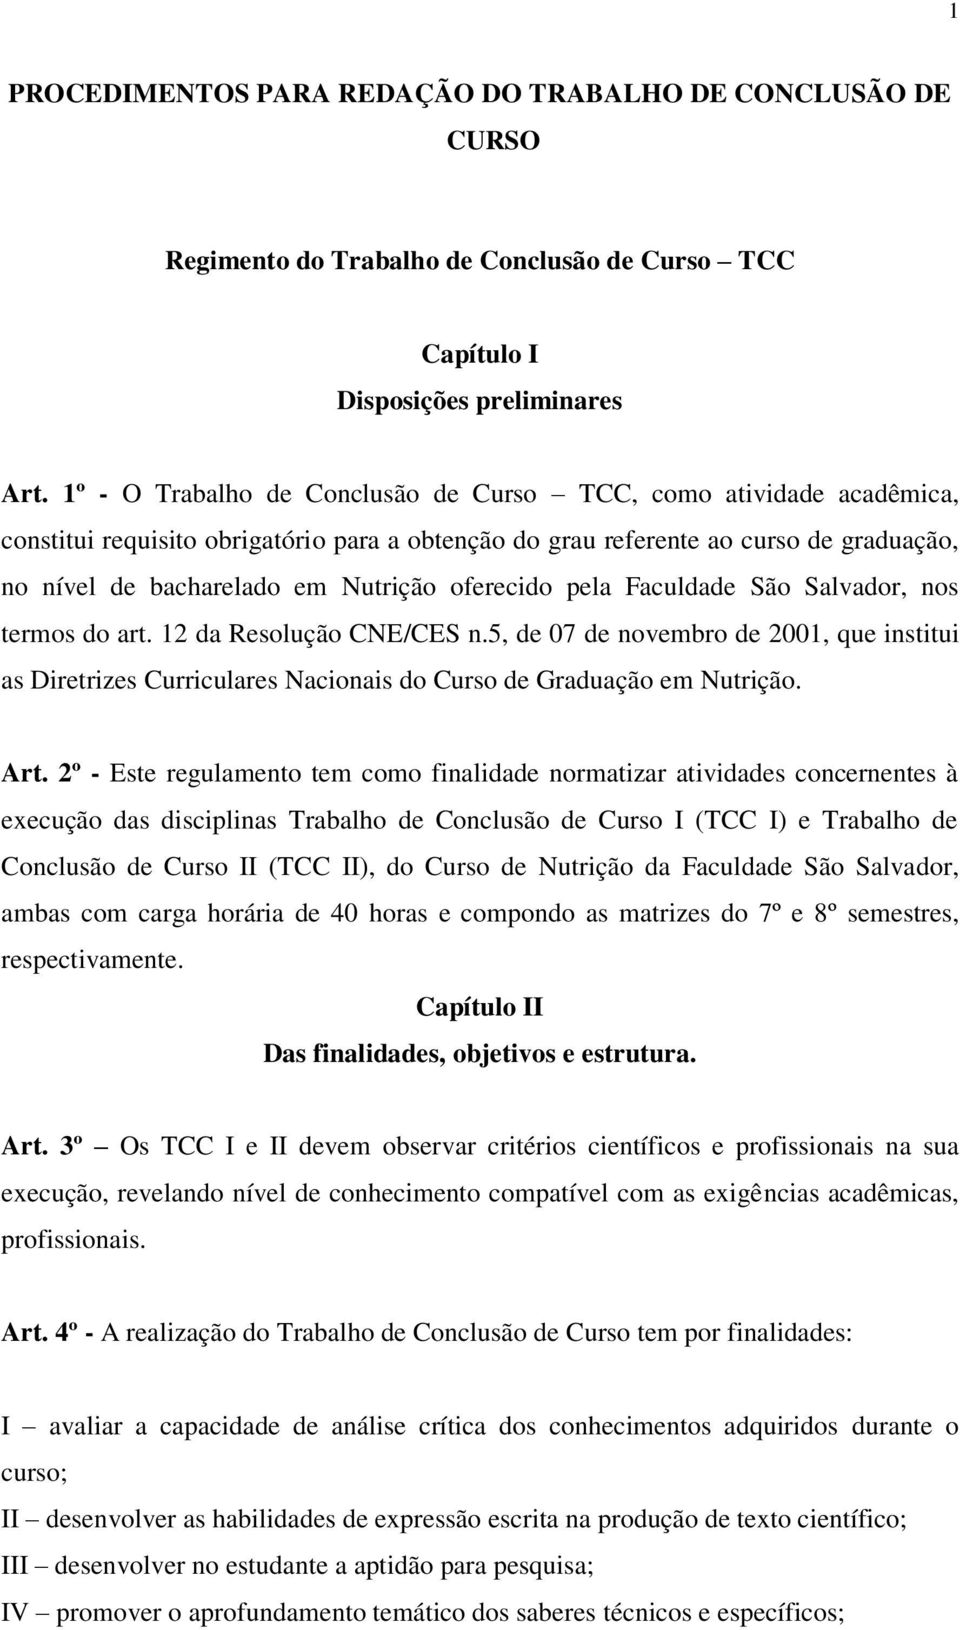 oferecido pela Faculdade São Salvador, nos termos do art. 12 da Resolução CNE/CES n.5, de 07 de novembro de 2001, que institui as Diretrizes Curriculares Nacionais do Curso de Graduação em Nutrição.